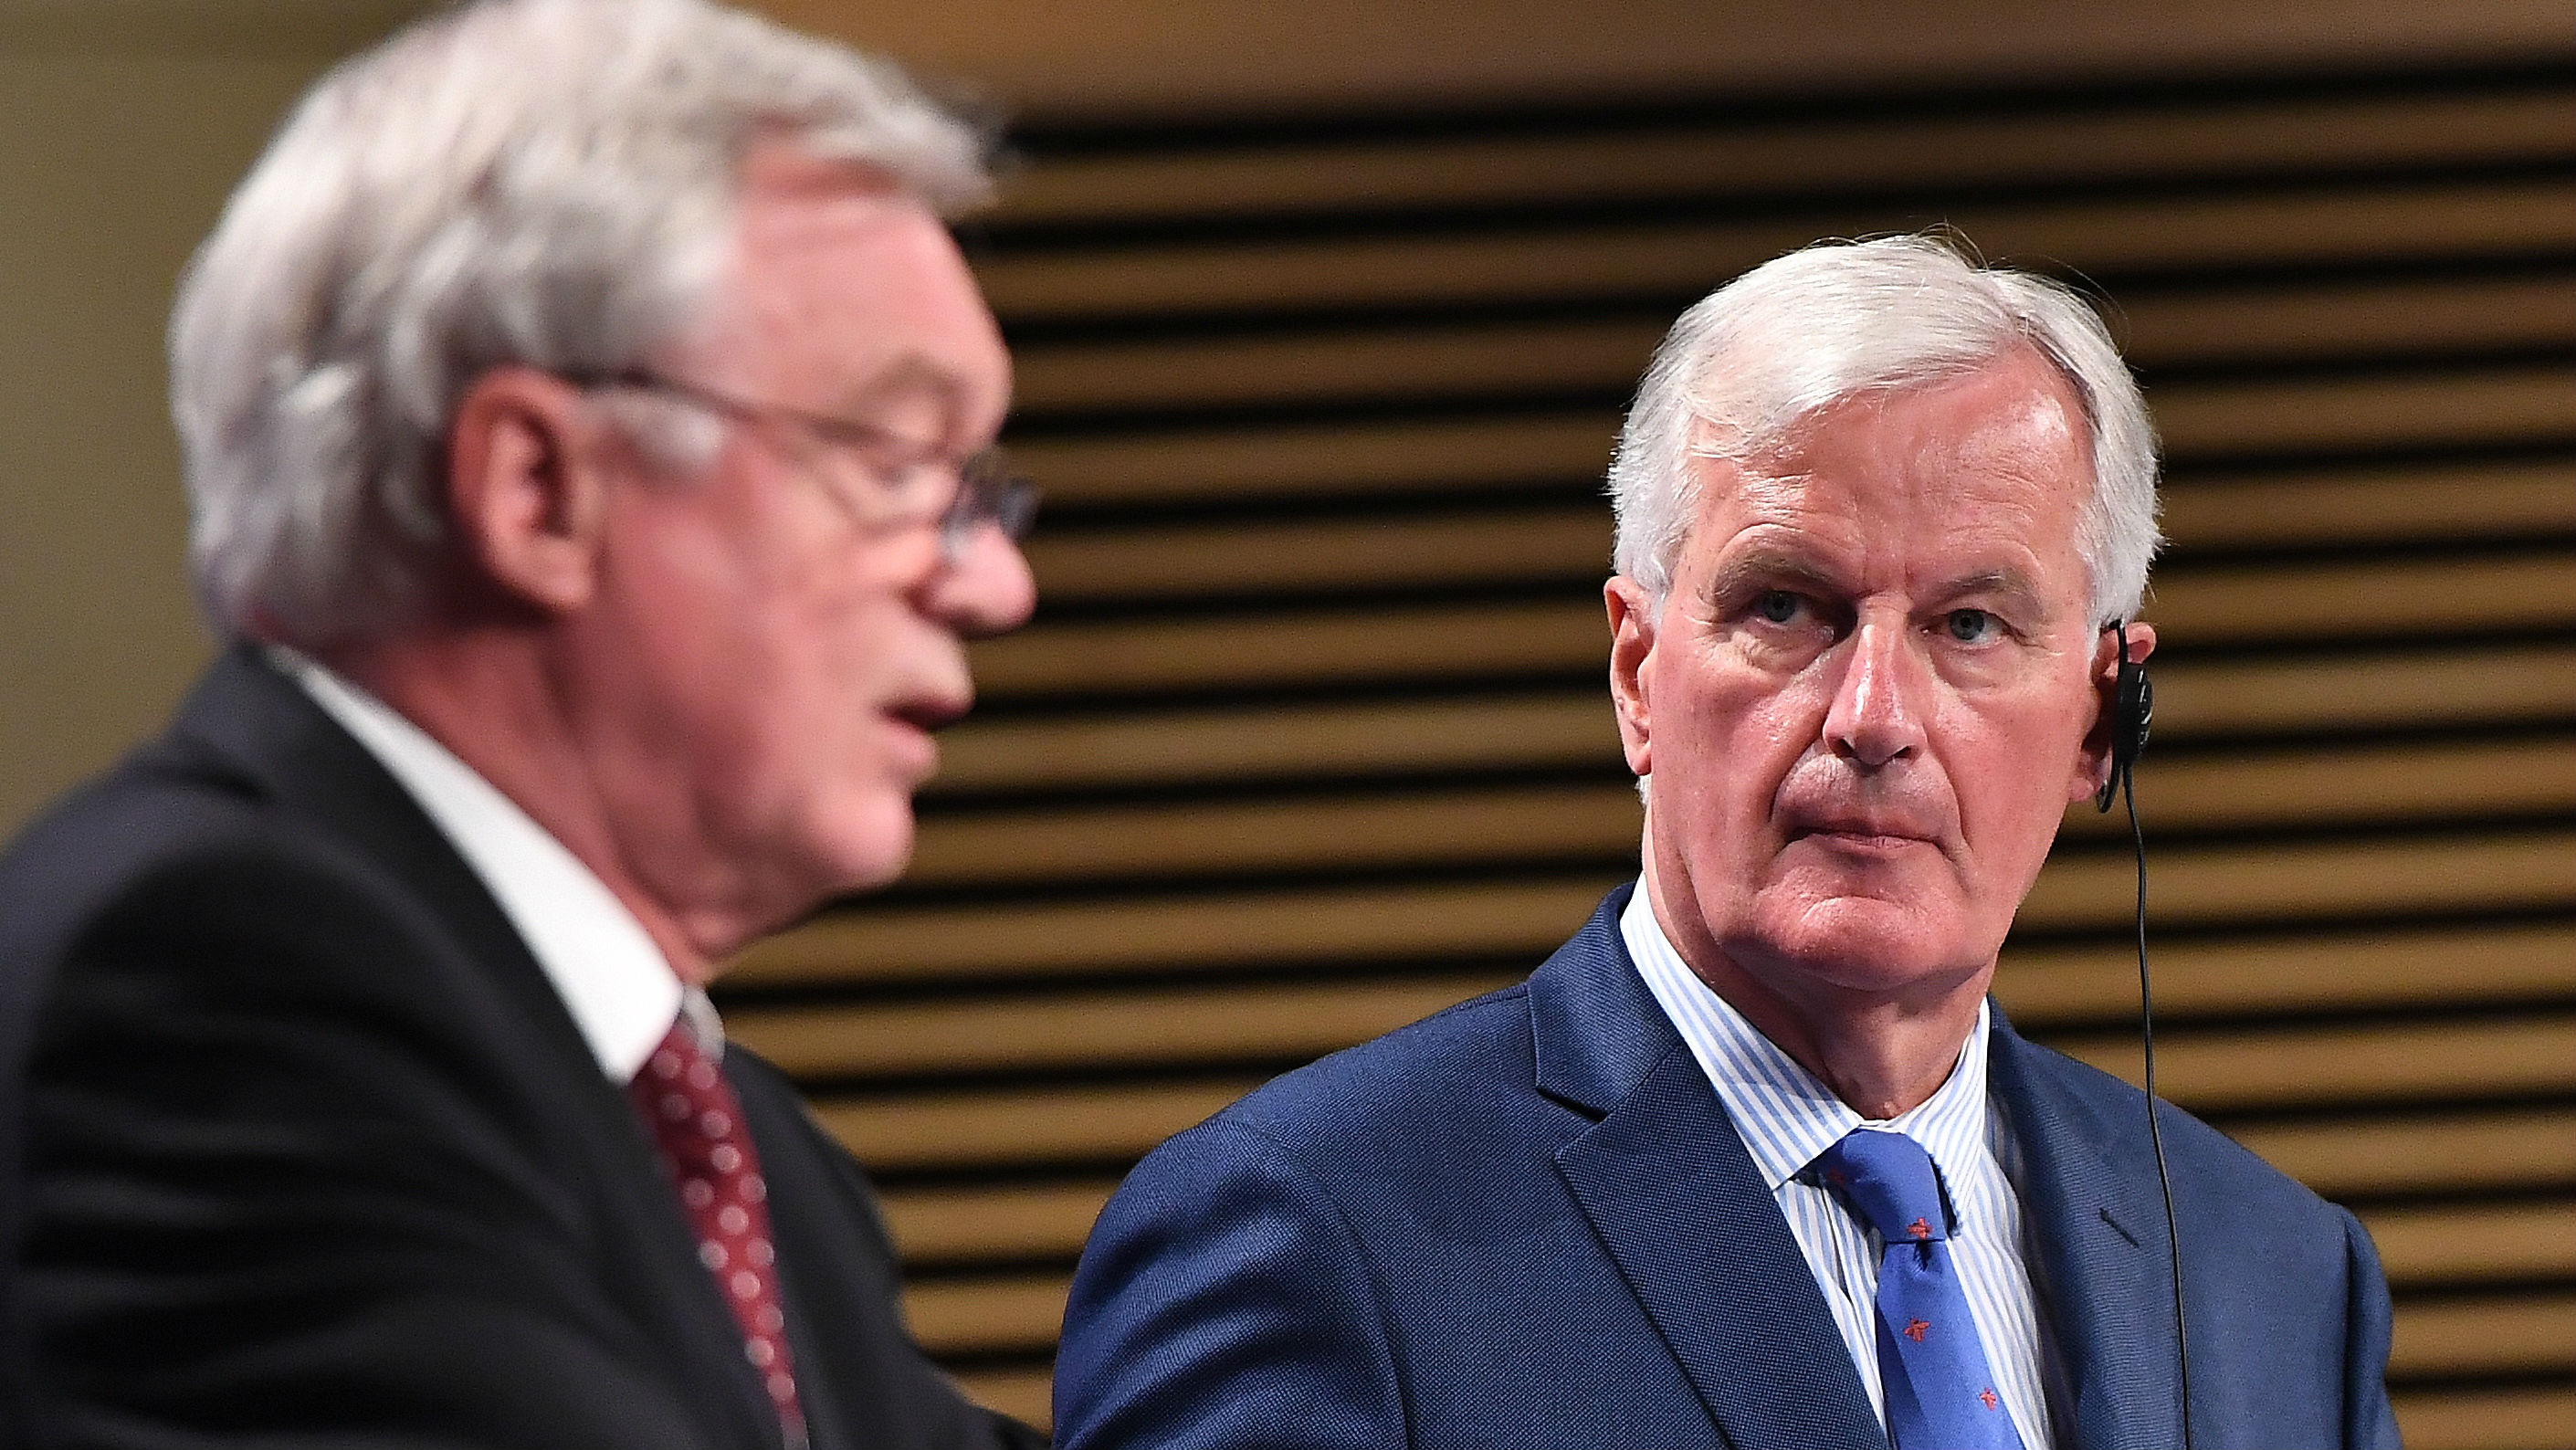 Brexit press conference - David Davis and Michel Barnier  